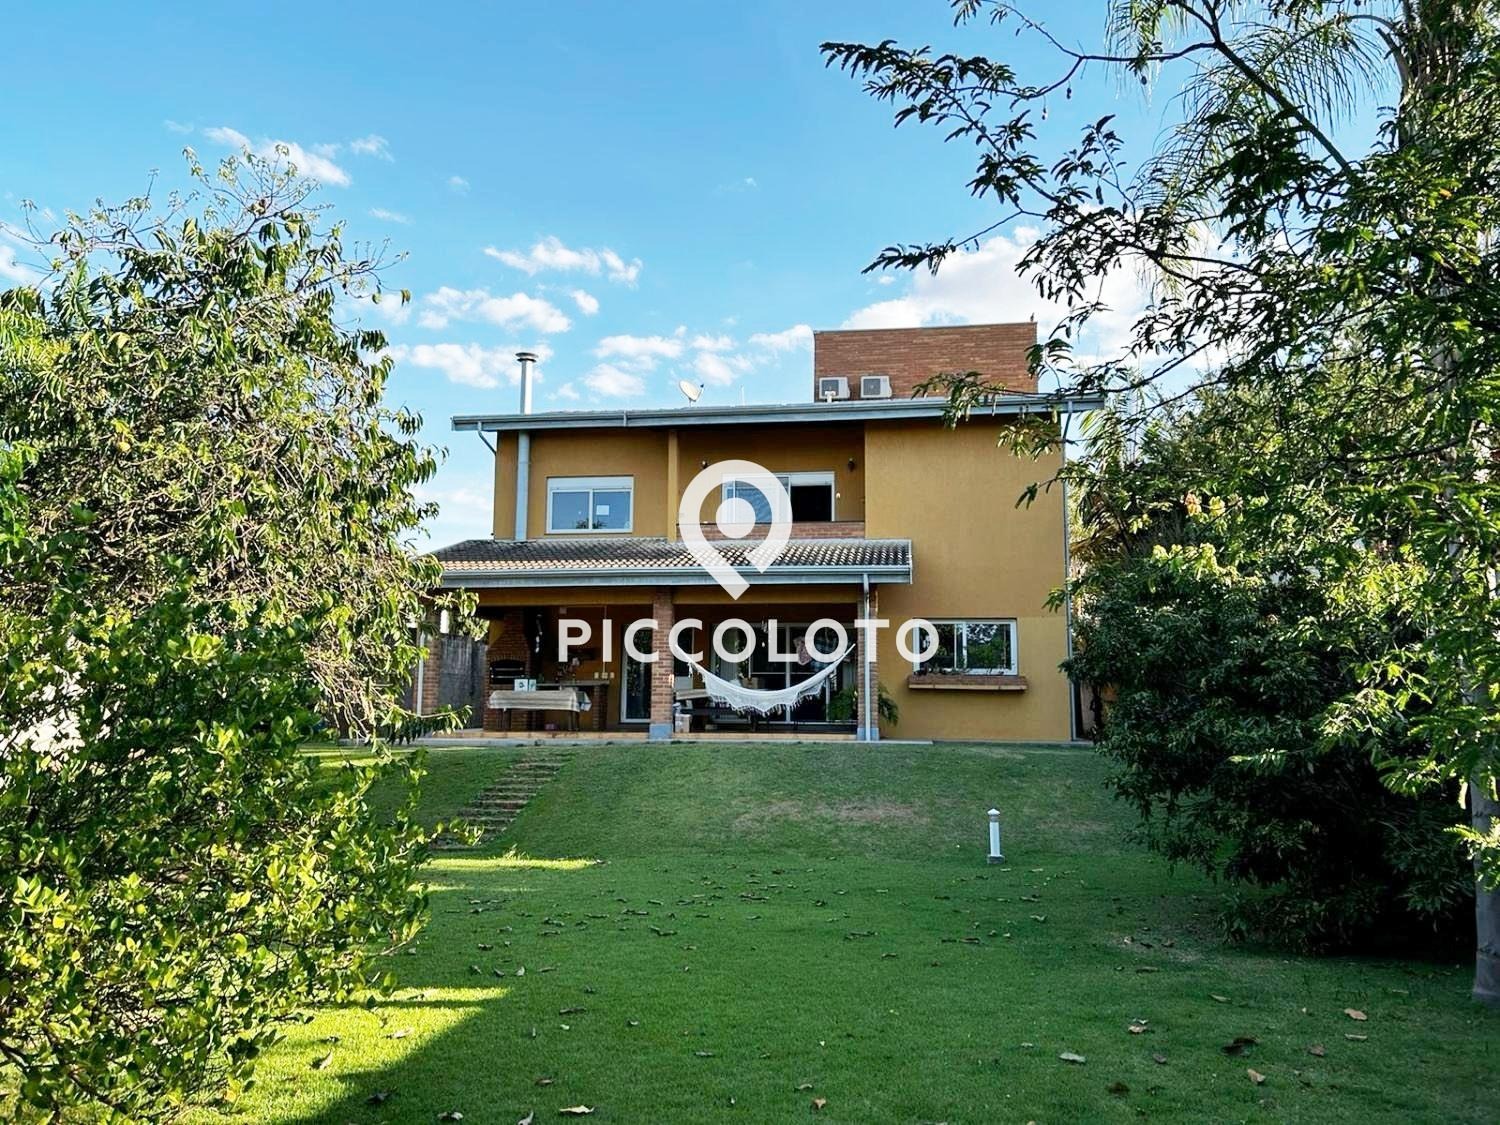 Piccoloto - Casa à venda no Parque Xangrilá em Campinas